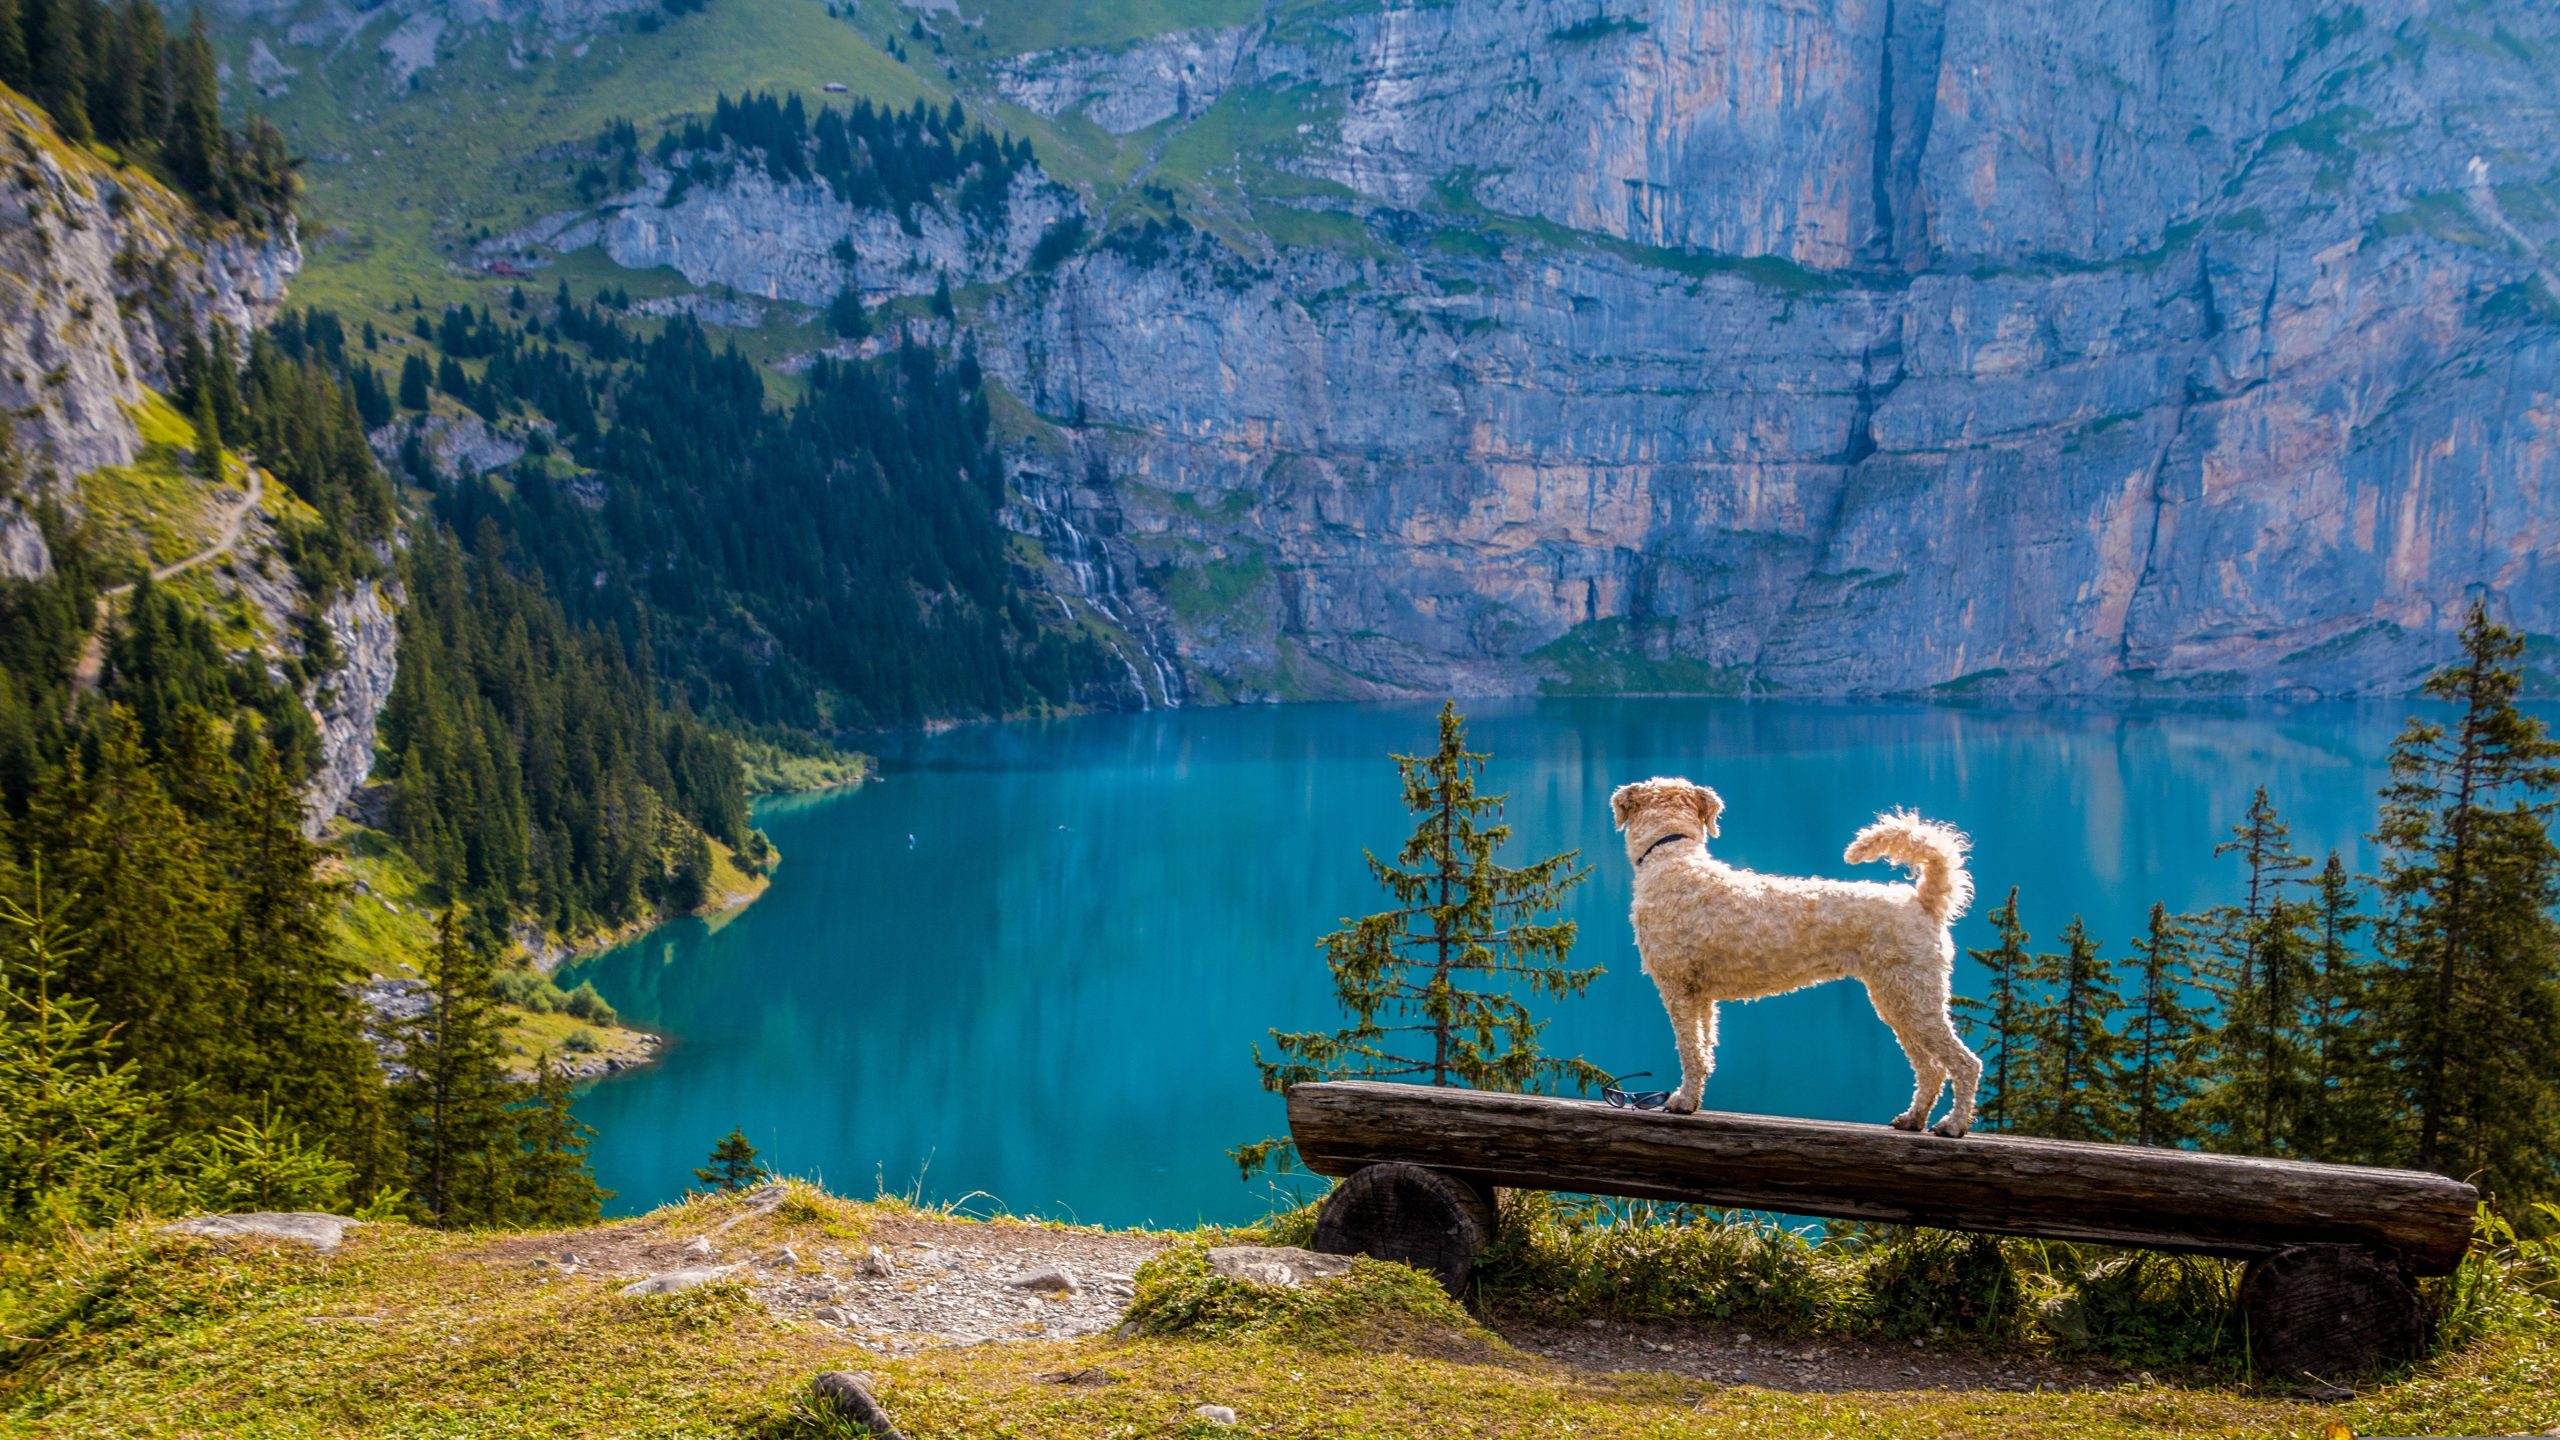 Hund der auf einer Bank steht und in ein Tal mit See blickt.